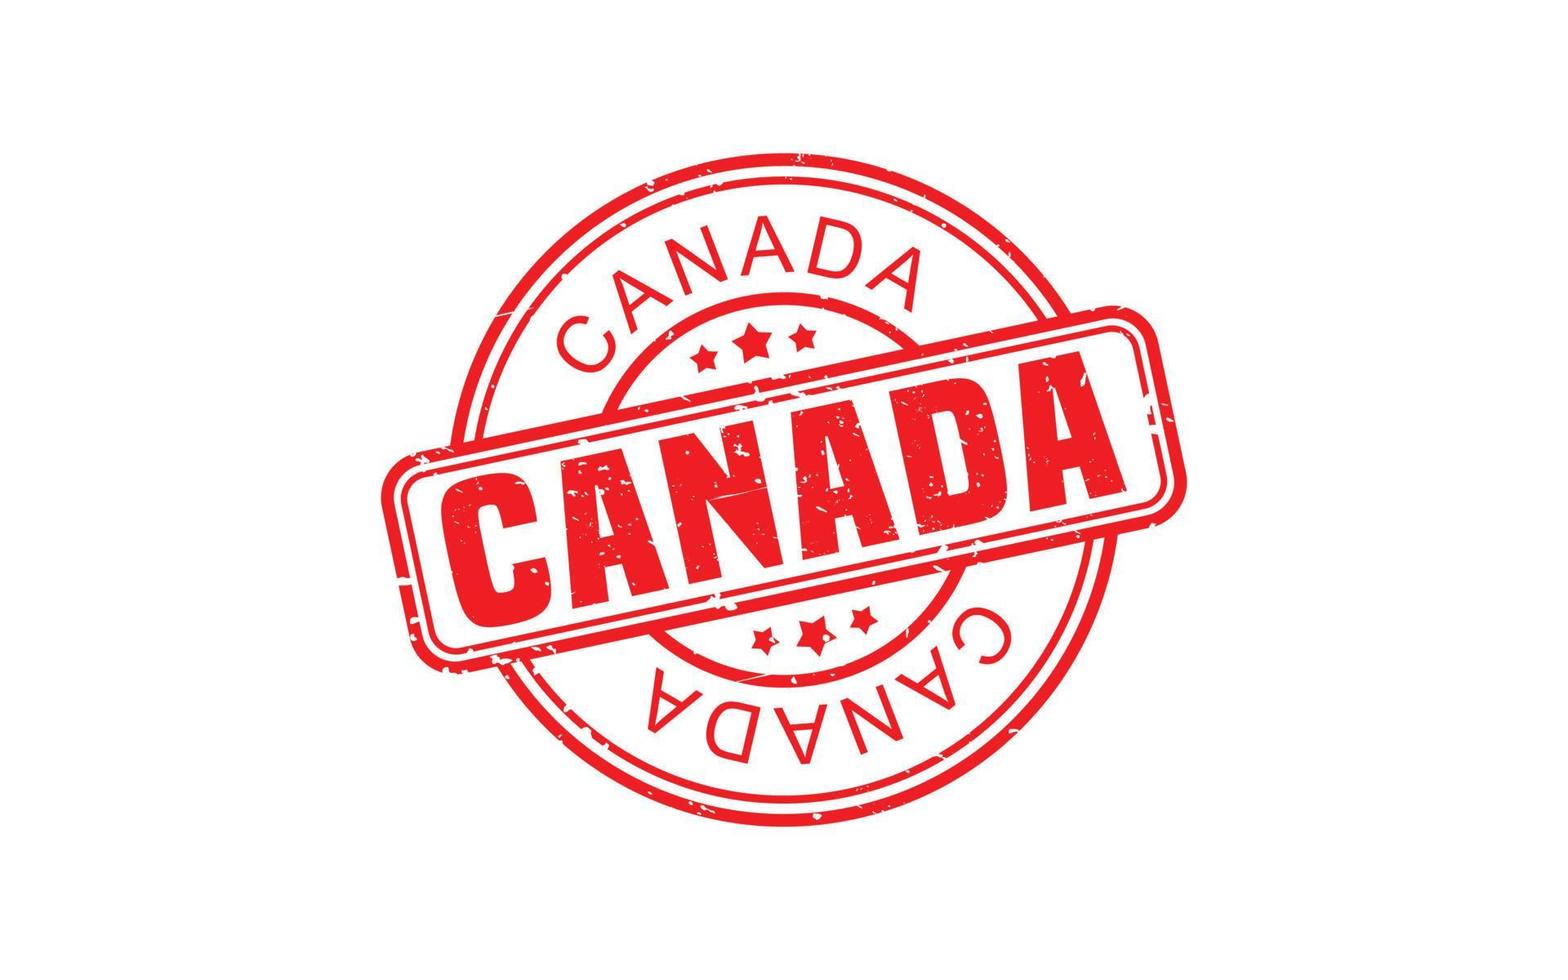 Kanada-Stempelgummi mit Grunge-Stil auf weißem Hintergrund vektor